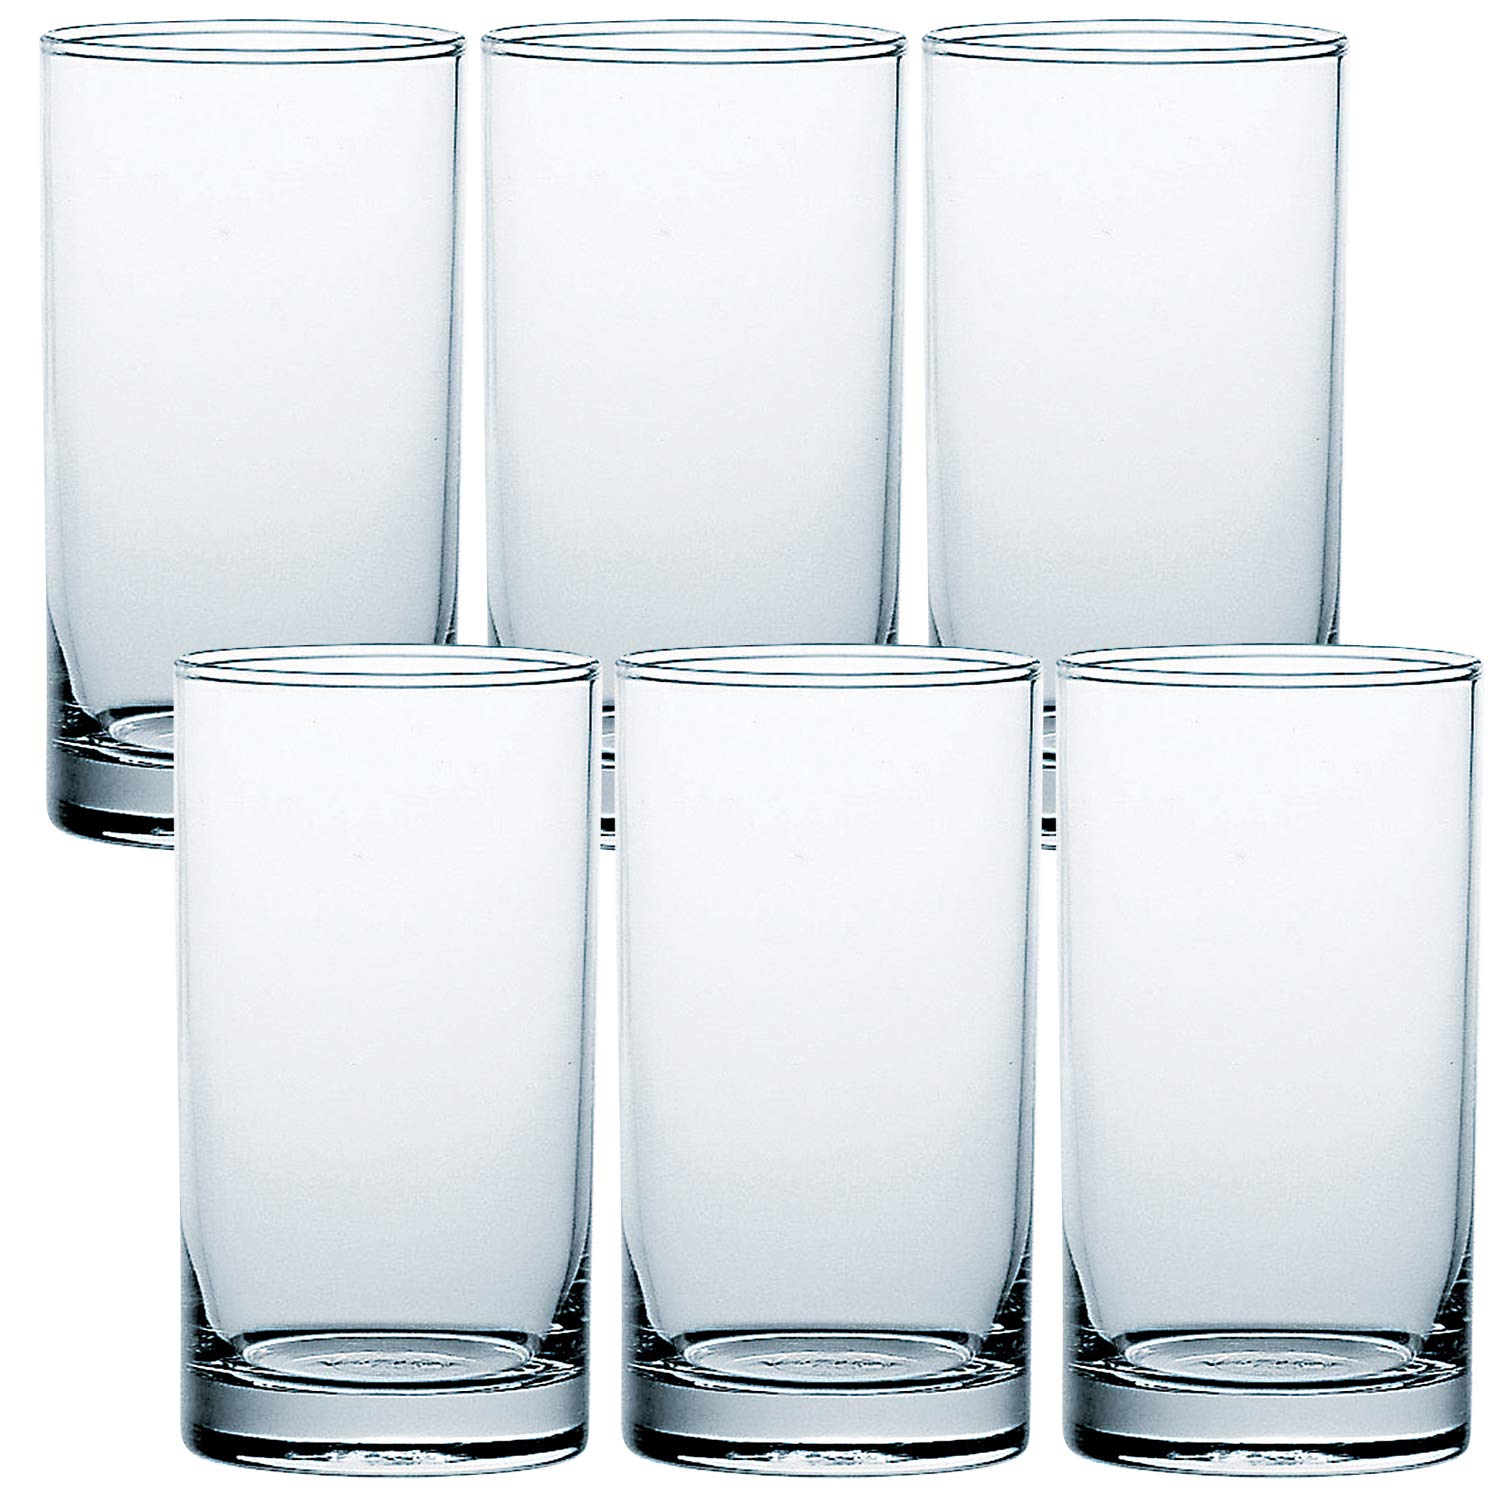 東洋佐々木ガラス Toyo Sasaki Glass 05100HS Tumbler Glass, HS Tumbler, 9.8 fl oz (275 ml), Set of 6, Father's Day, Made in Japan, Dishwasher Safe, Shatter-Resistant, Tumbler, Glass, Cup